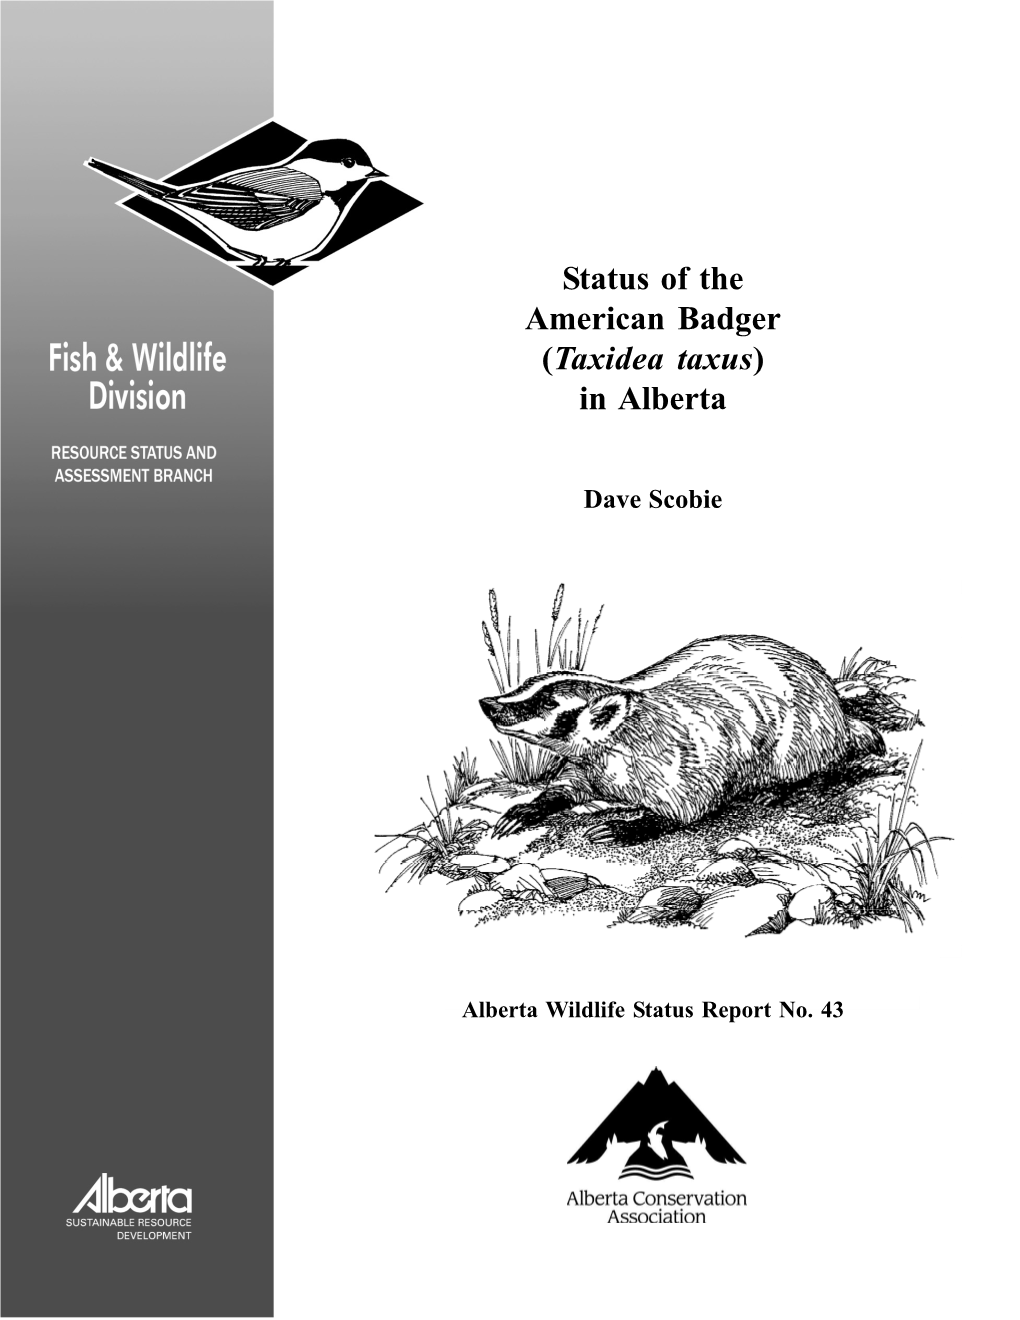 Status of American Badger in Alberta 2002